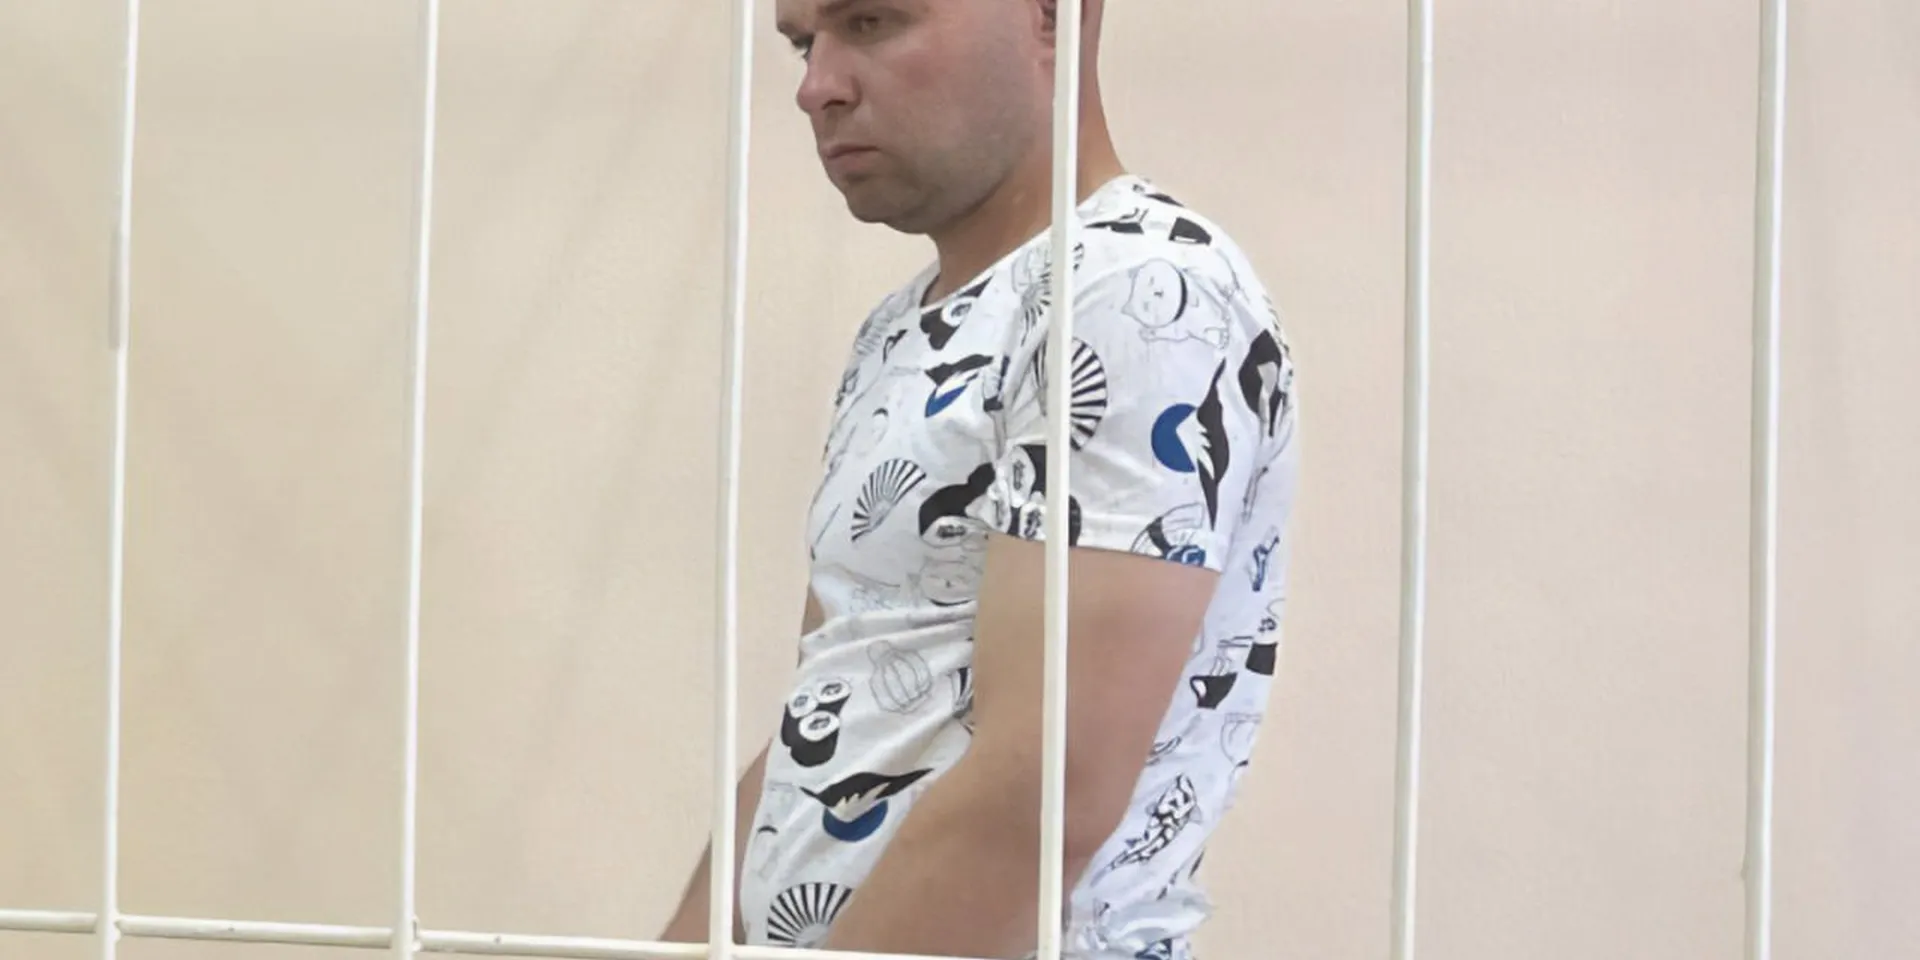 Арестованного по делу о взрыве на НПЗ в Самаре уроженца Украины Сергея Окрушко ежедневно вывозят в ФСБ. Правозащитники считают, что его там регулярно подвергают пыткам